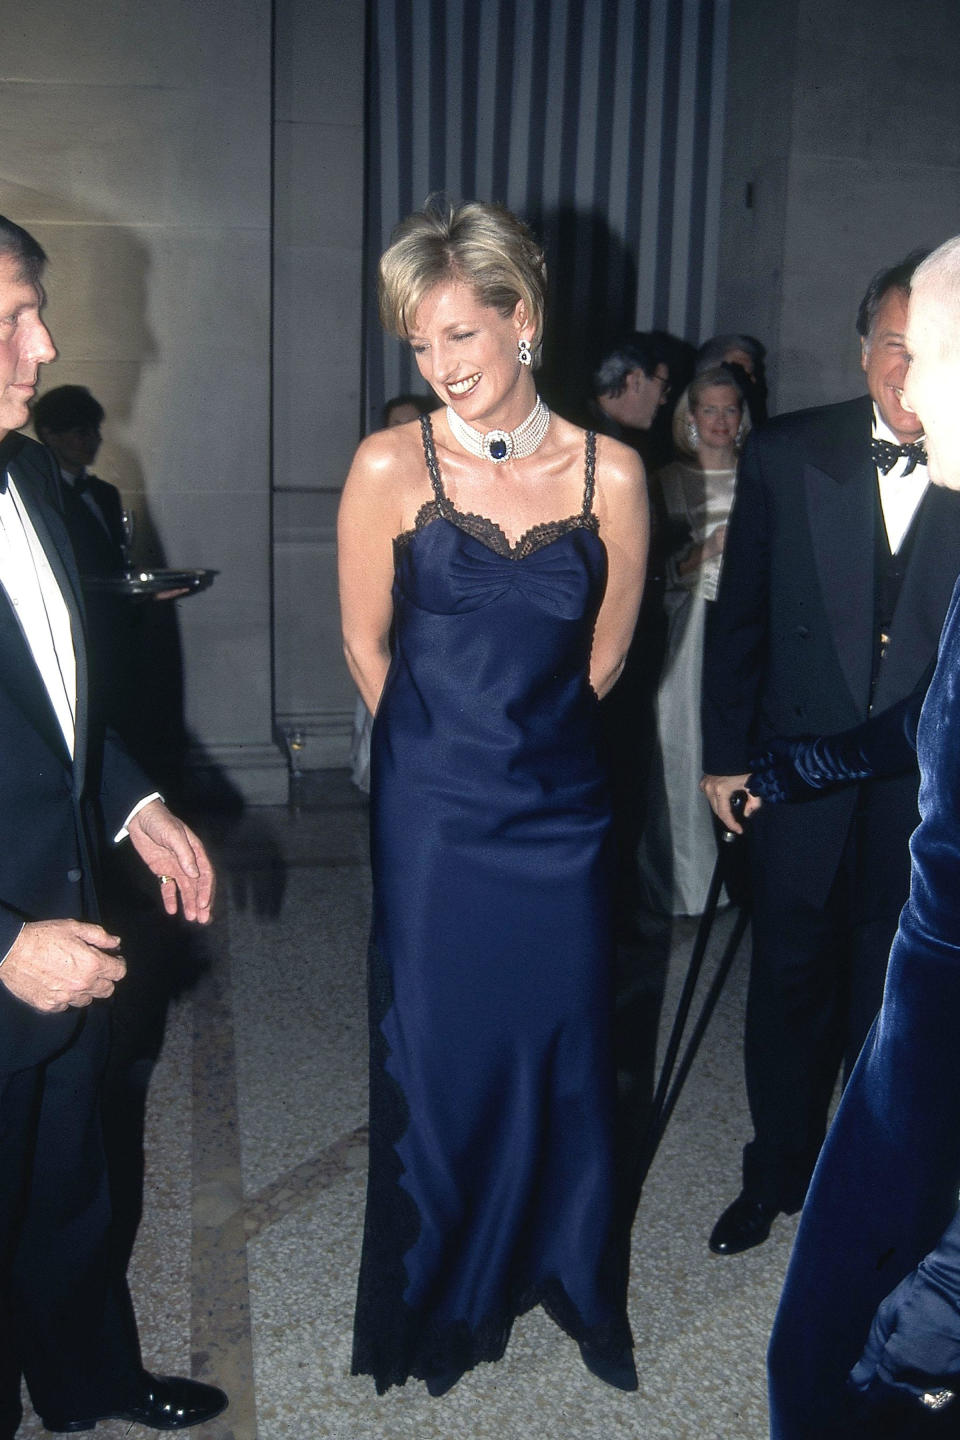 Princess Diana attends Met Gala at Metropolitan Museum of Art on January 1, 1996 in New York City. / Credit: Patrick McMullan/Patrick McMullan via Getty Images